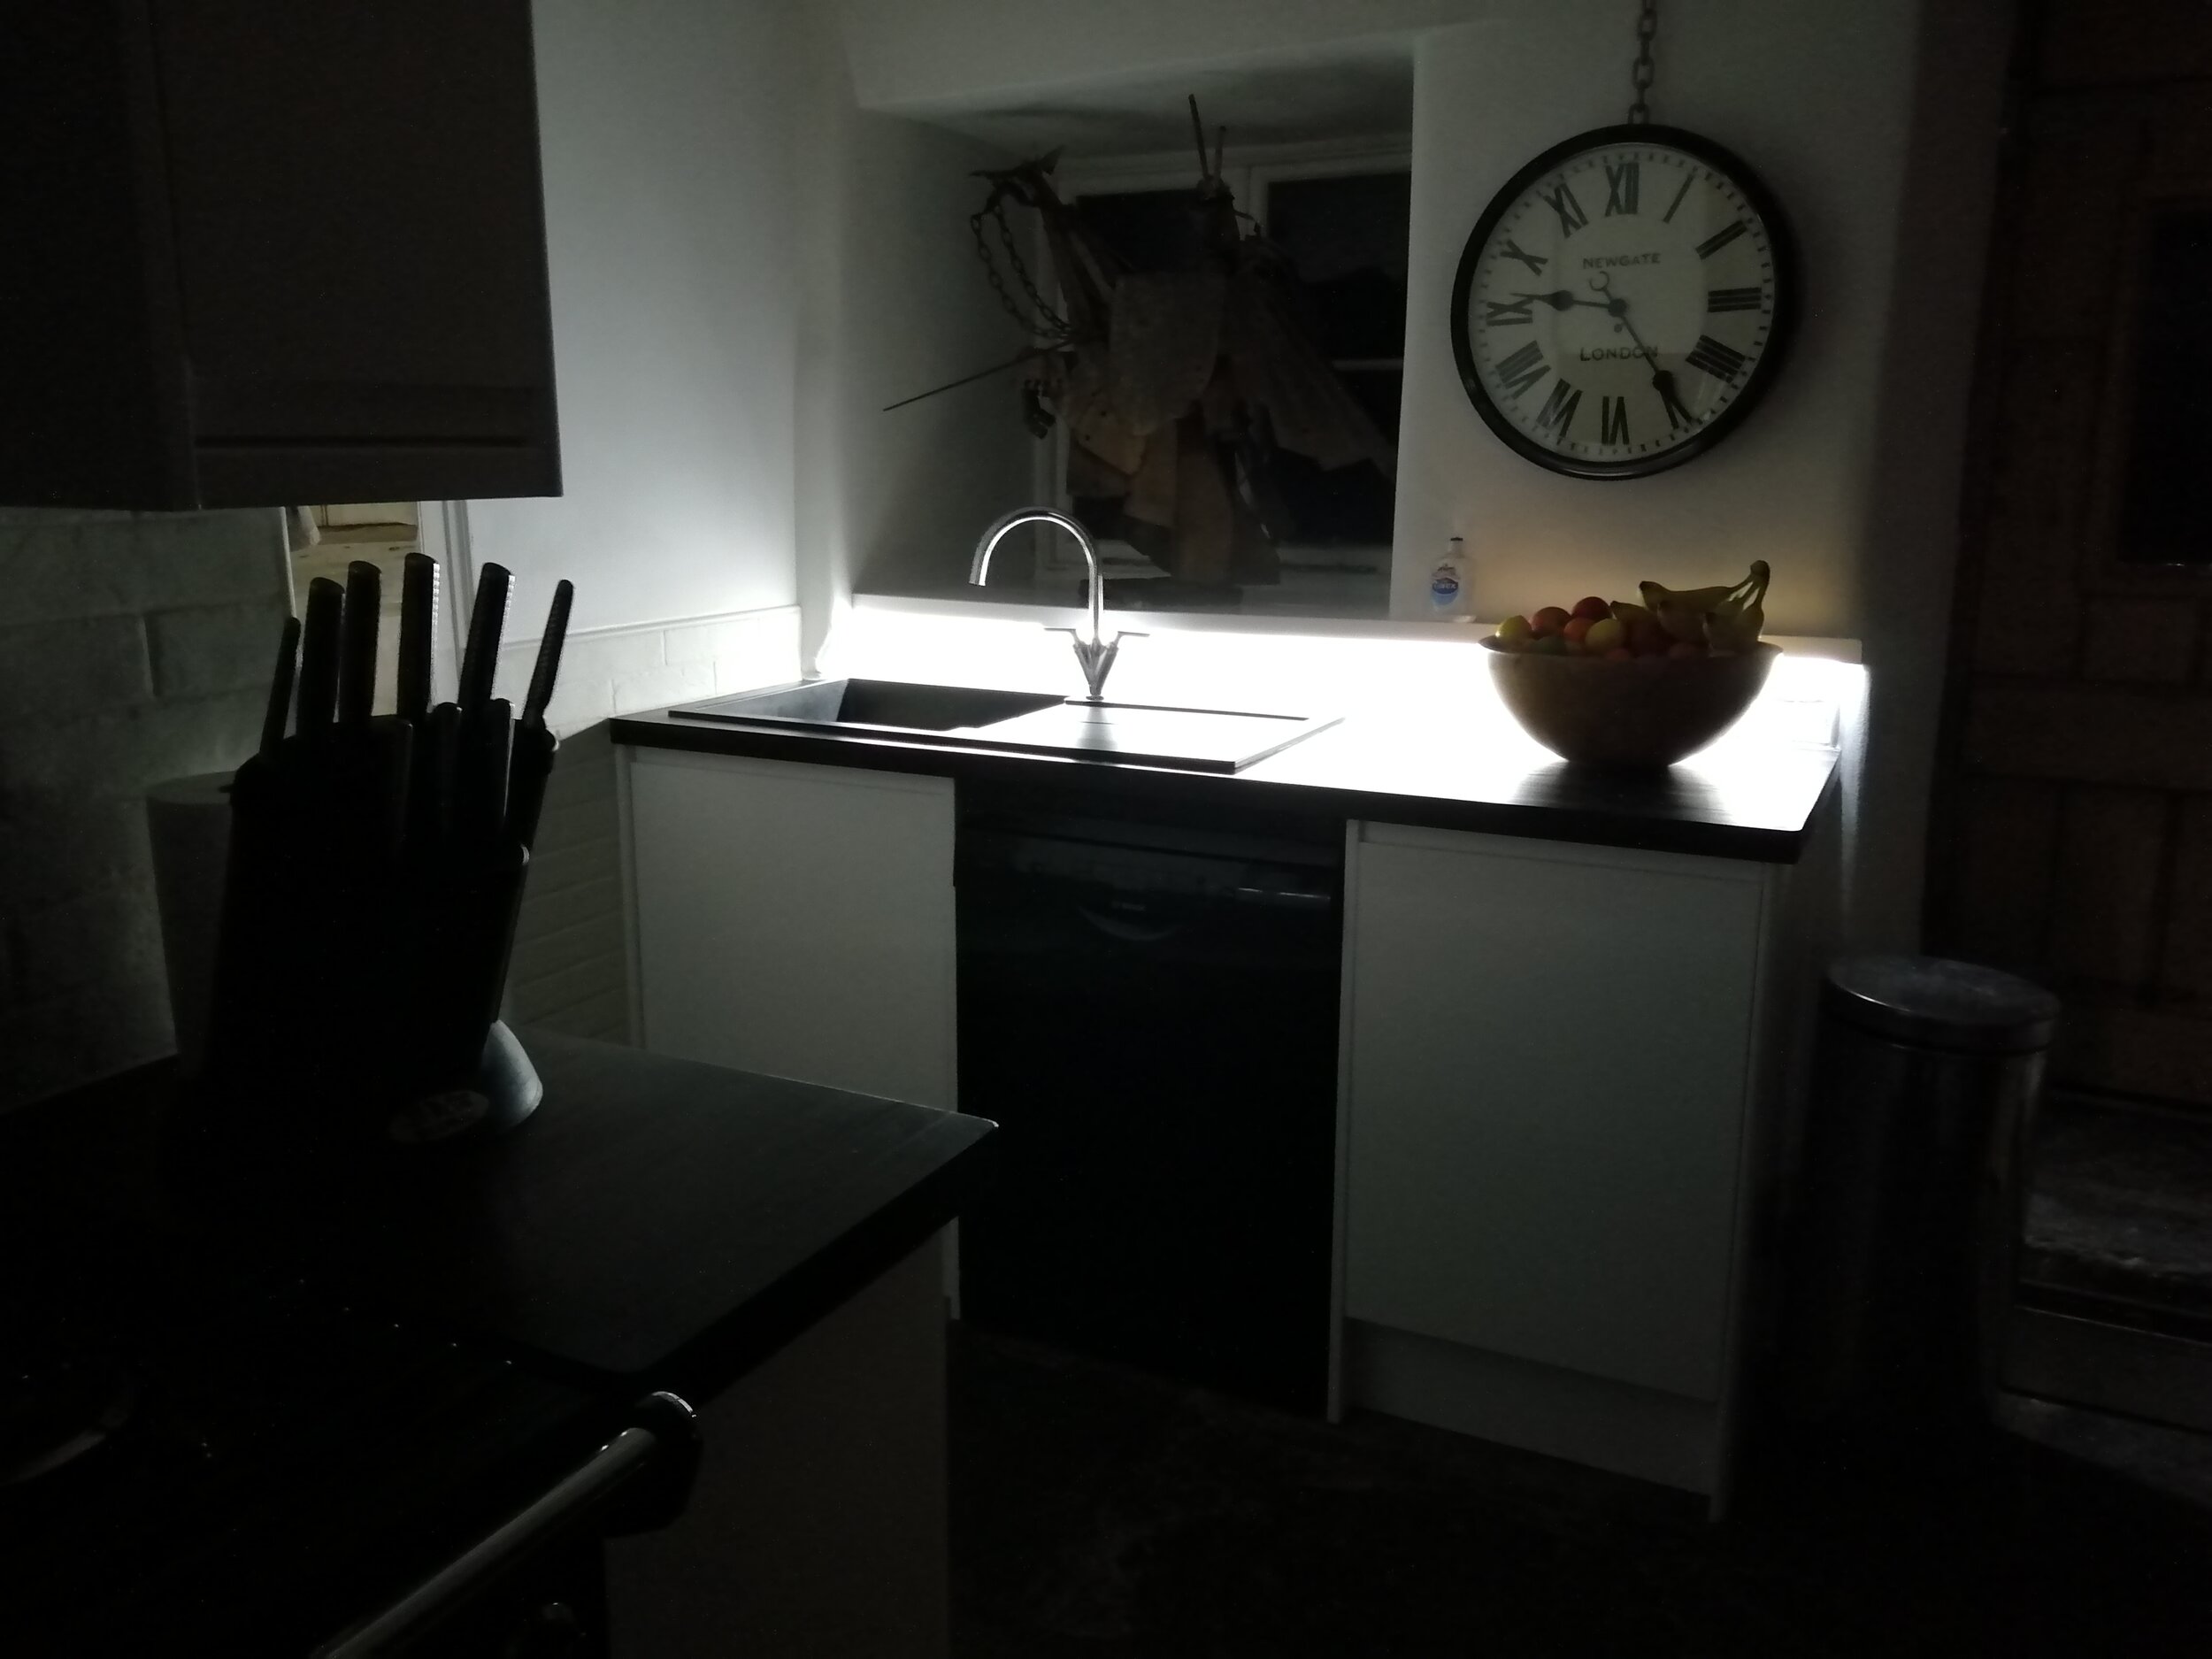 Kitchen sink light.NPME.jpg